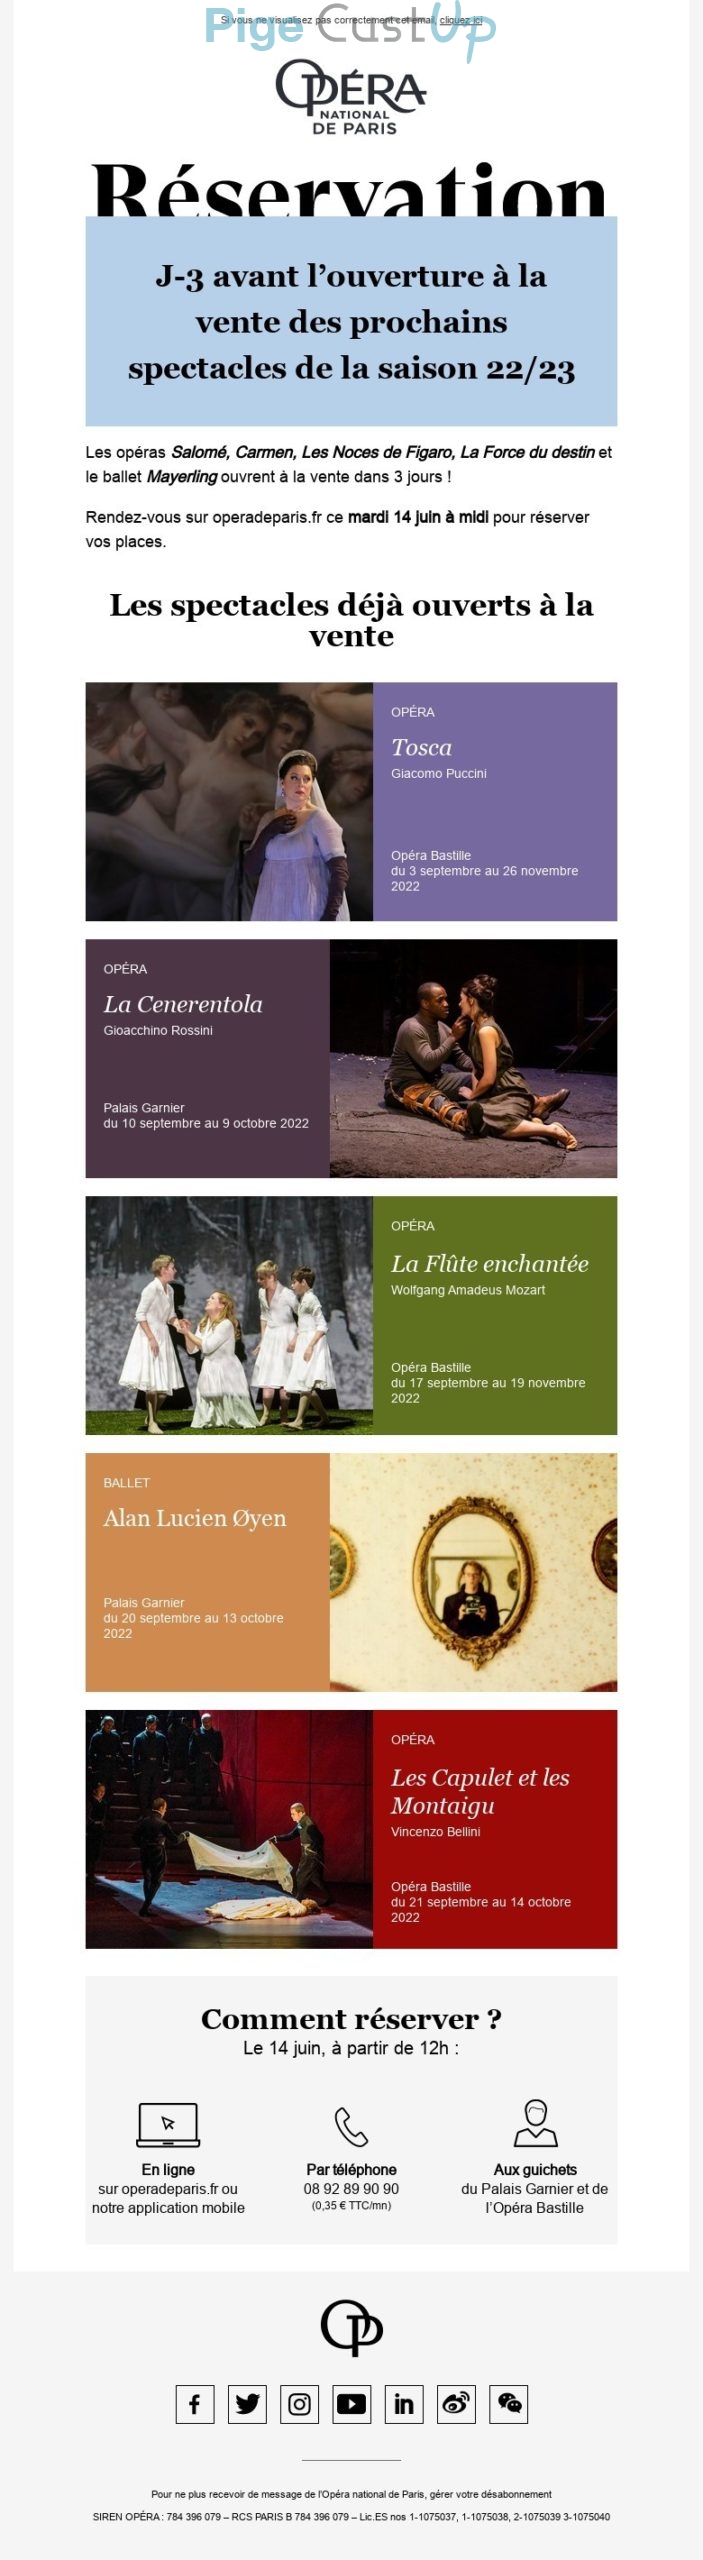 Exemple de Type de media  e-mailing - Opéra de Paris - Marketing relationnel - Newsletter